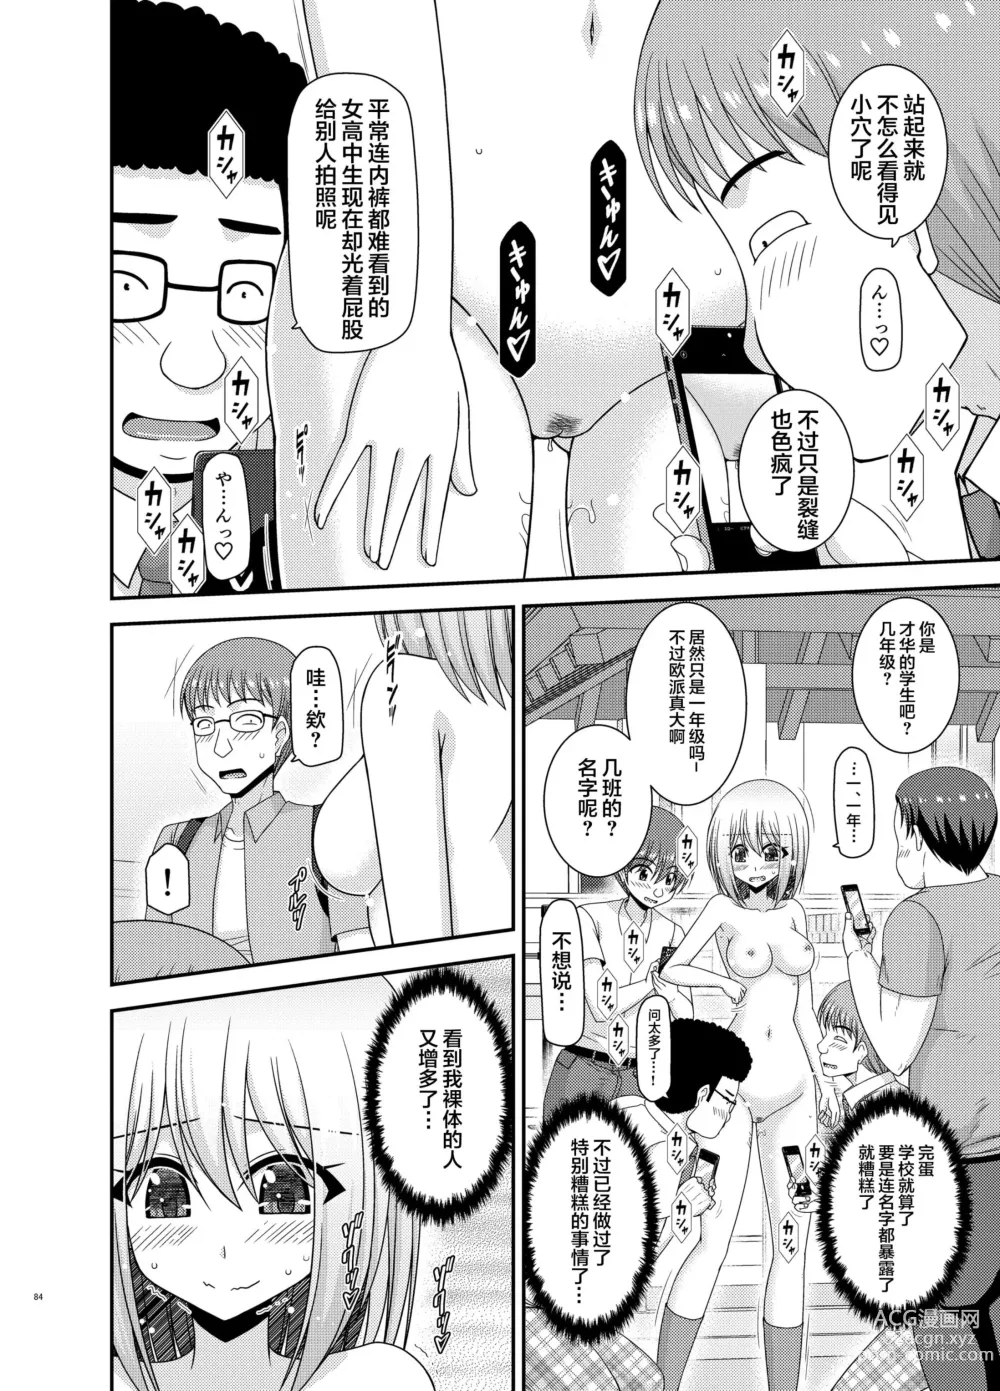 Page 81 of manga Nozokare Roshutsu Shoujo